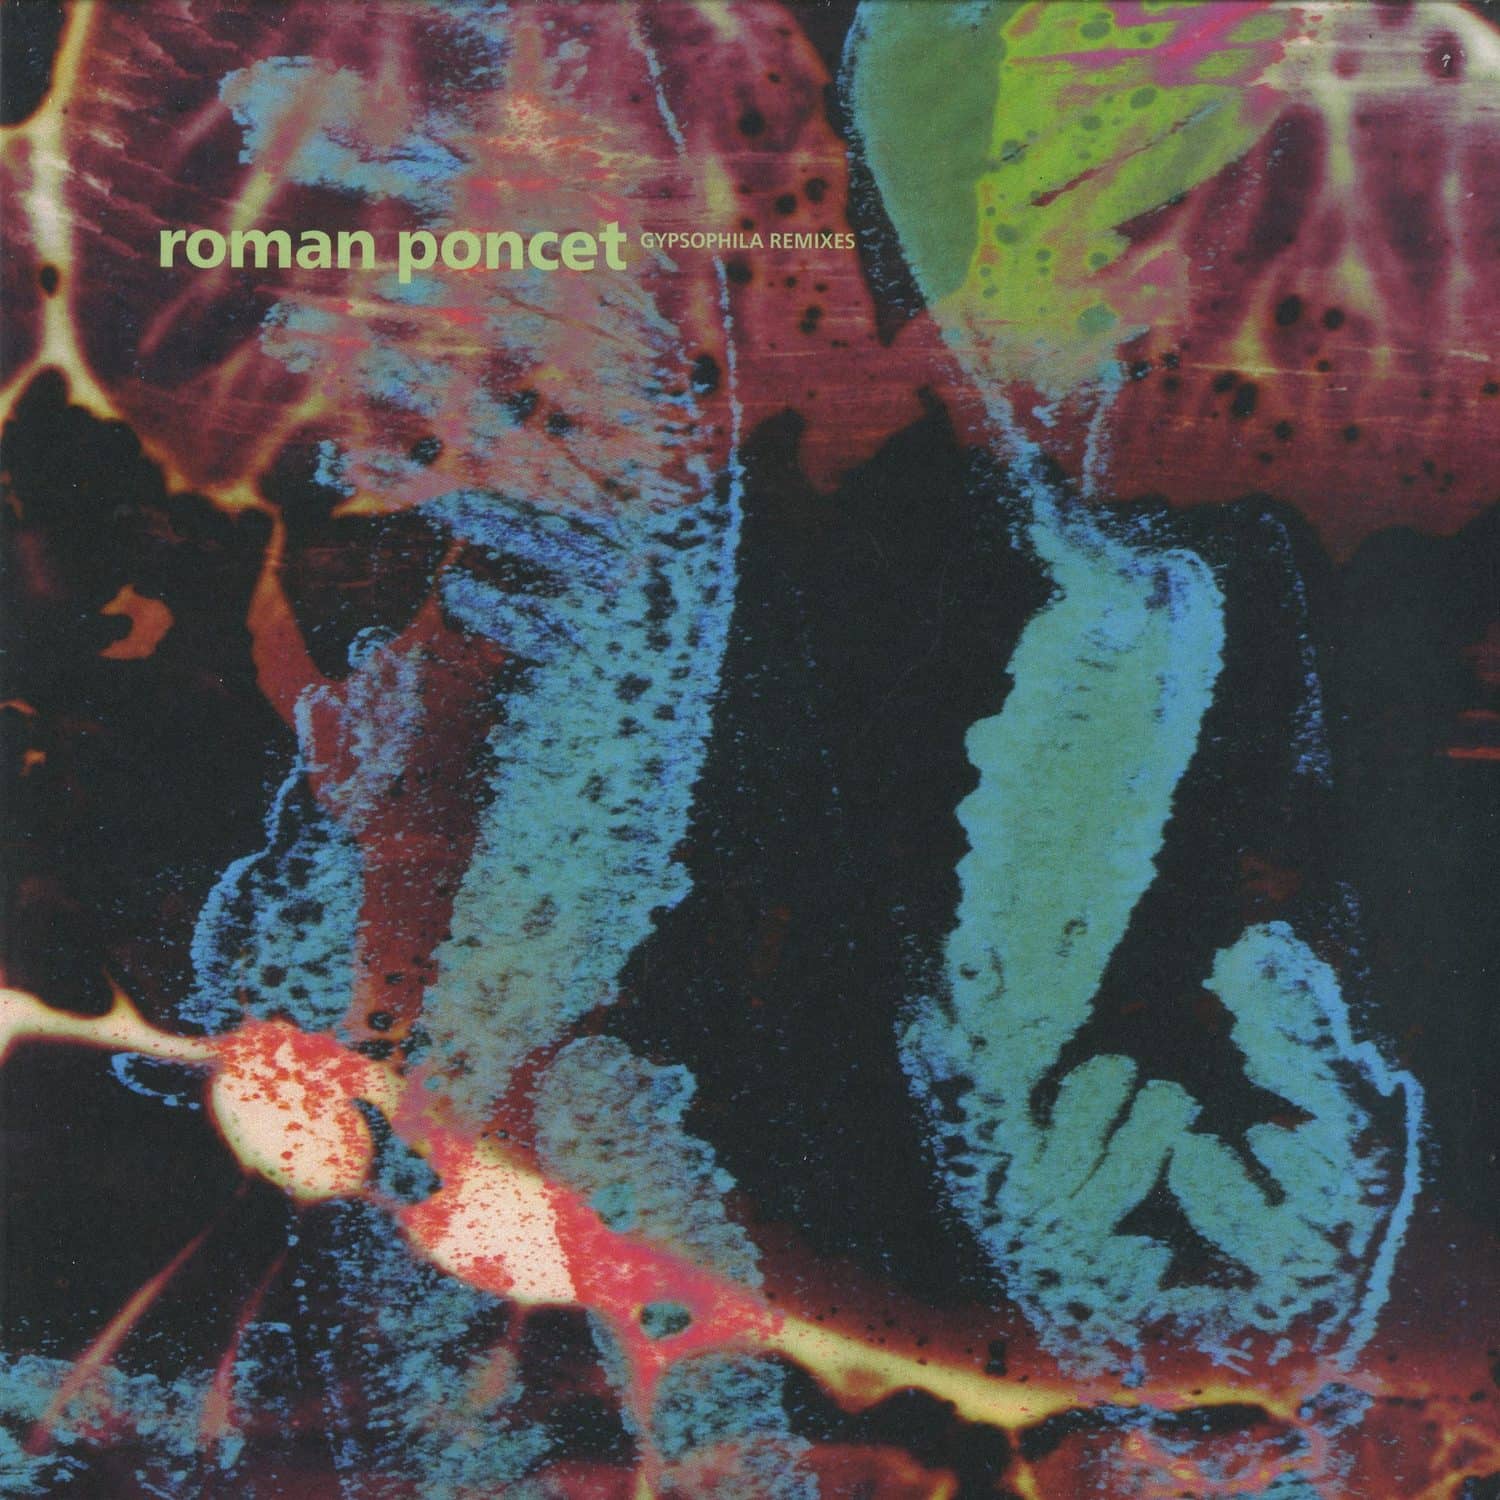 Roman Poncet - GYPSOPHILA REMIXES